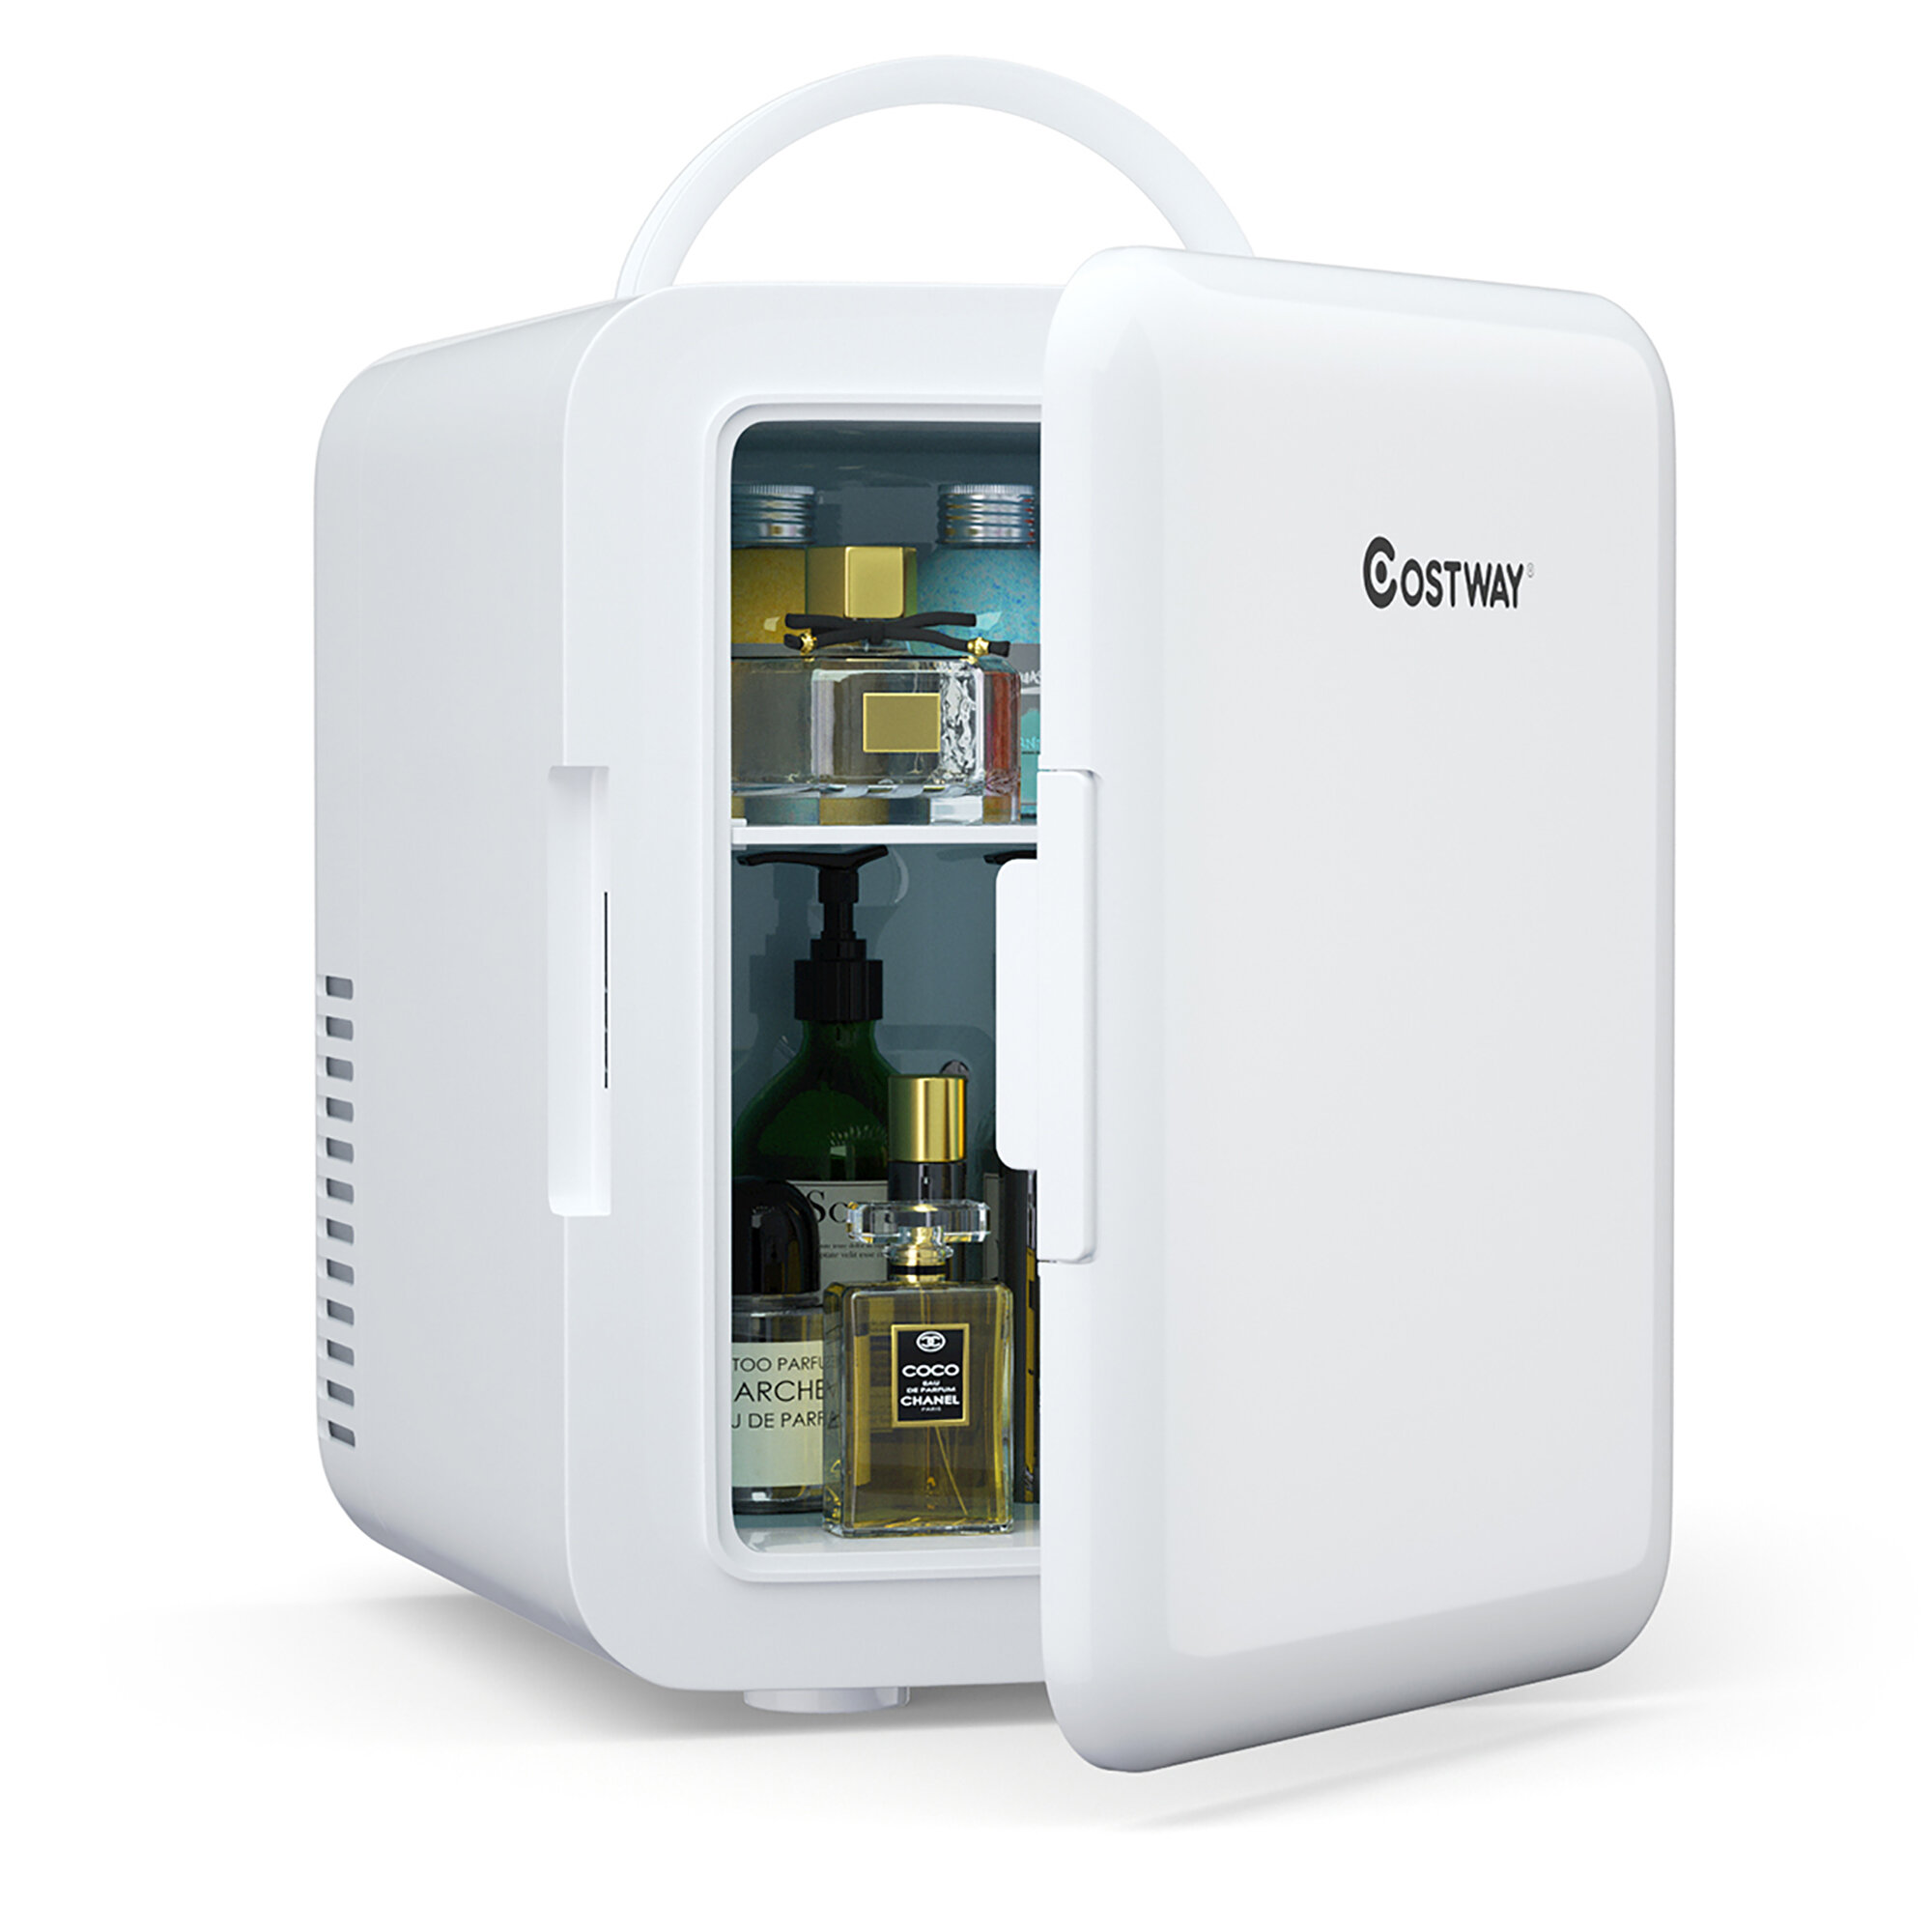 https://assets.wfcdn.com/im/05473339/compr-r85/1471/147180088/costway-014-cubic-feet-portable-freestanding-mini-fridge.jpg